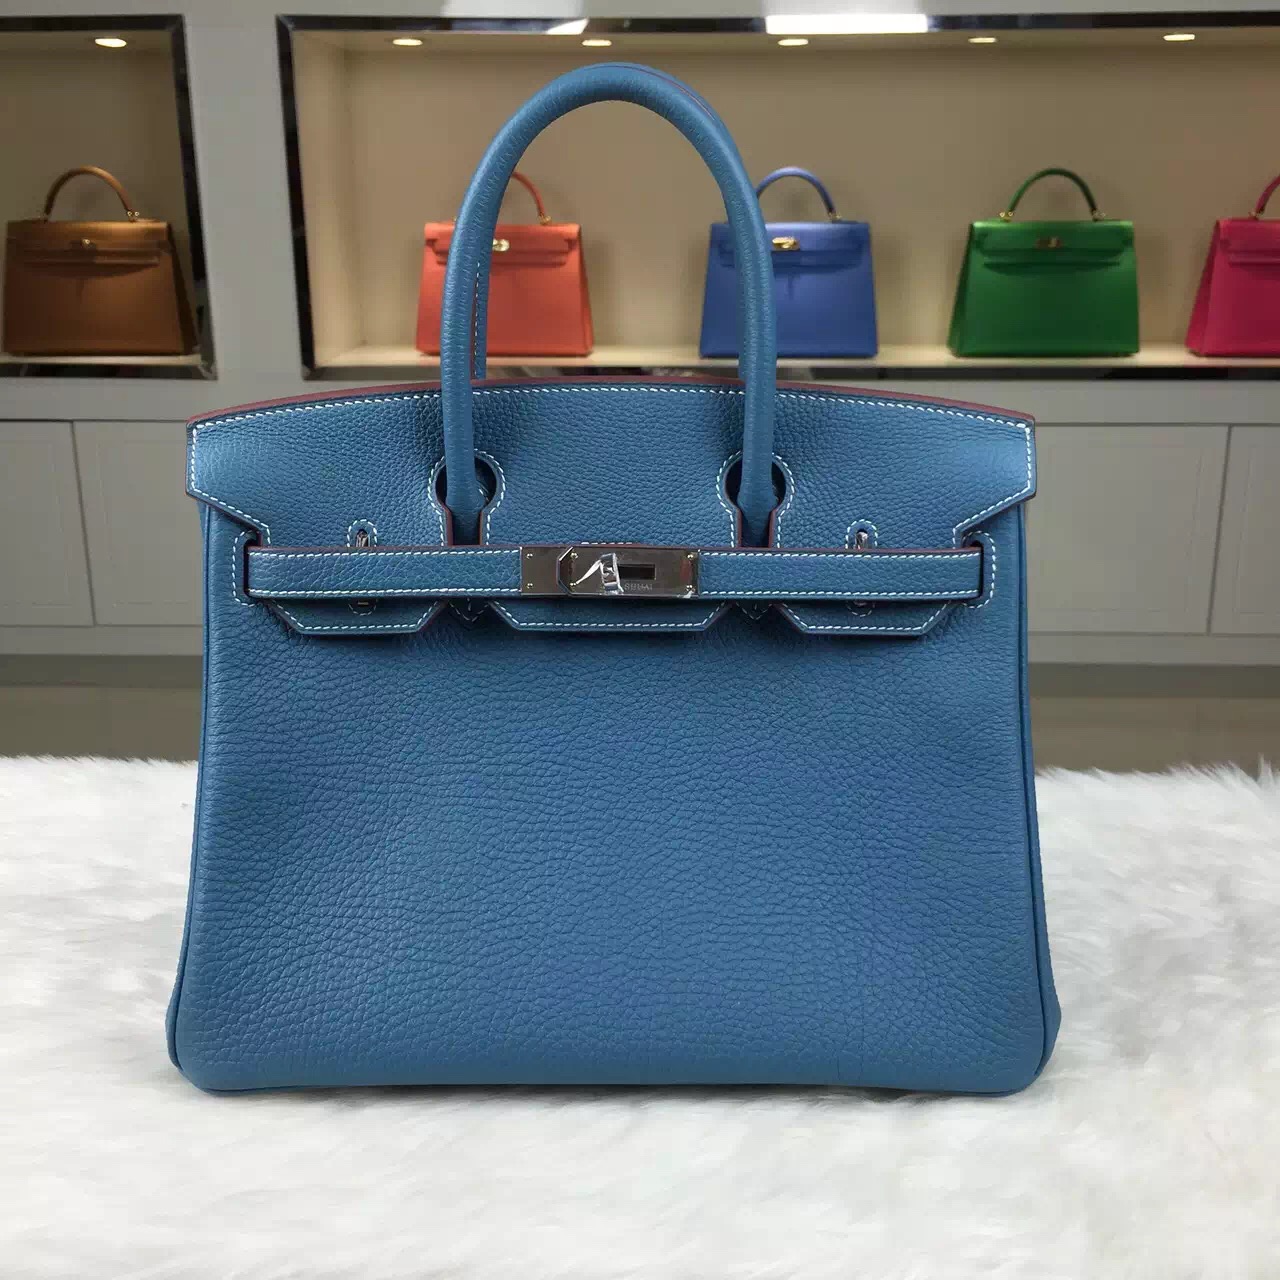 Discount Hermes Birkin Bag 30CM Multi-color France Togo Calfskin Leather Tote Bag